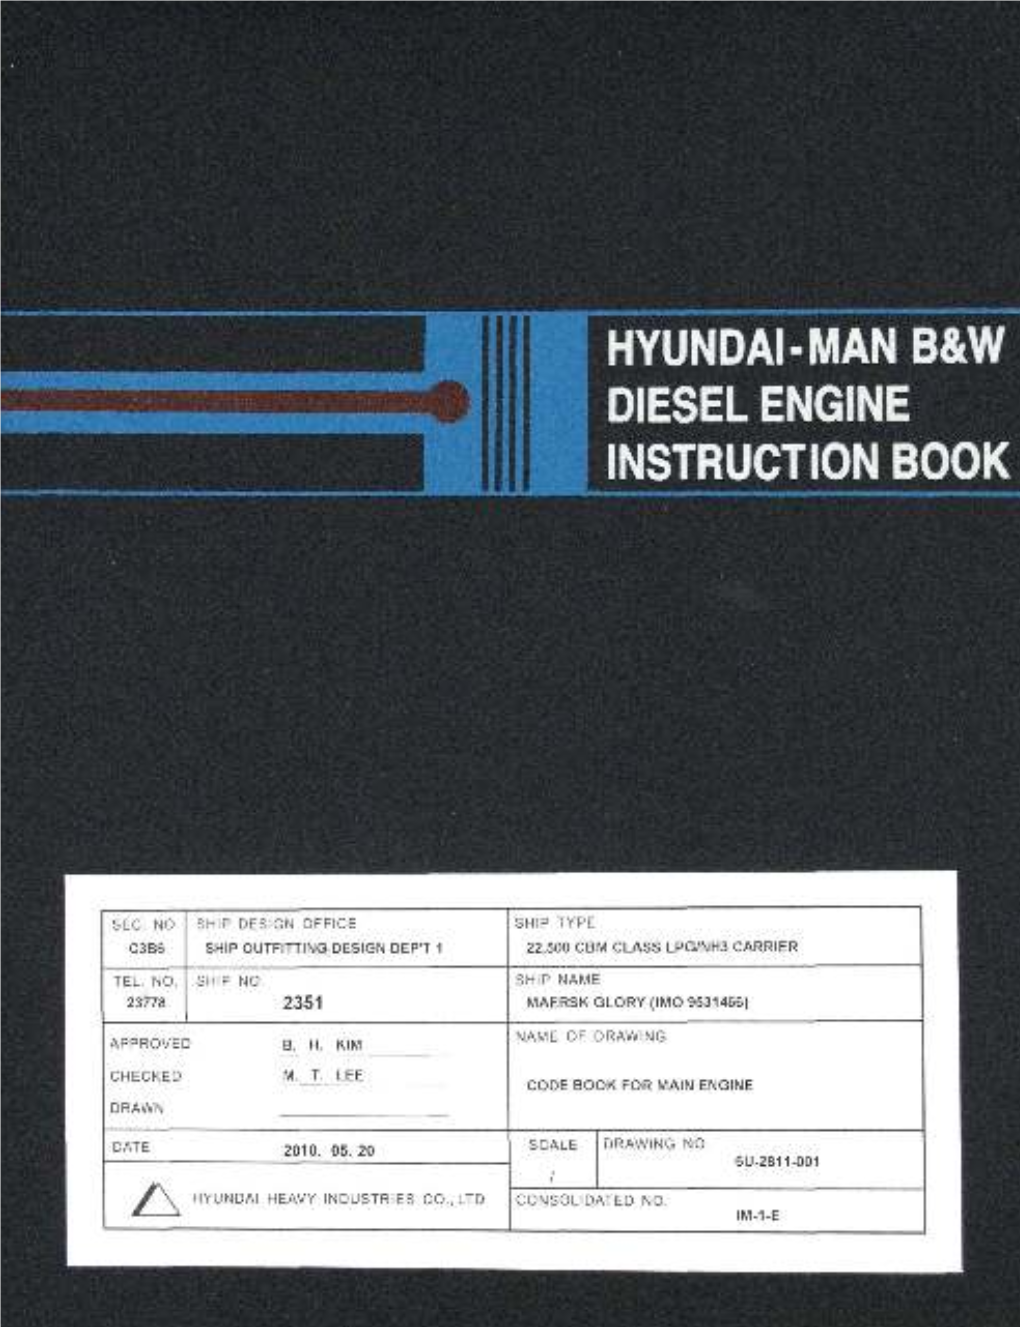 Hyundai-Man B&W Diesel Engine Instruction Book